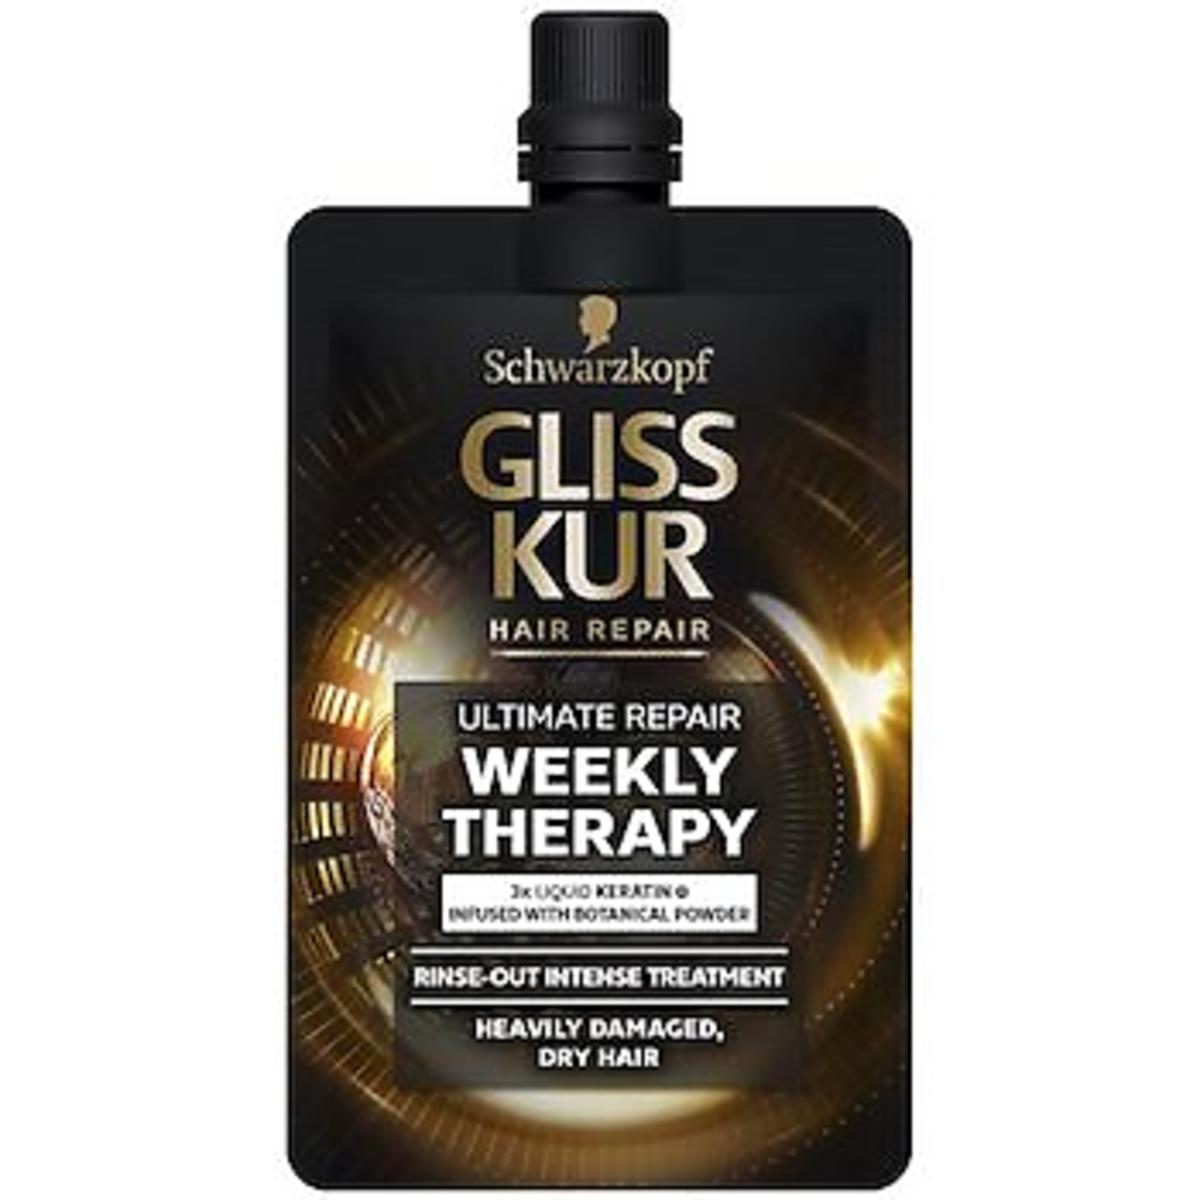 Intensywna odżywka Schwarzkopf Gliss Kur do bardzo zniszczonych i suchych włosów.